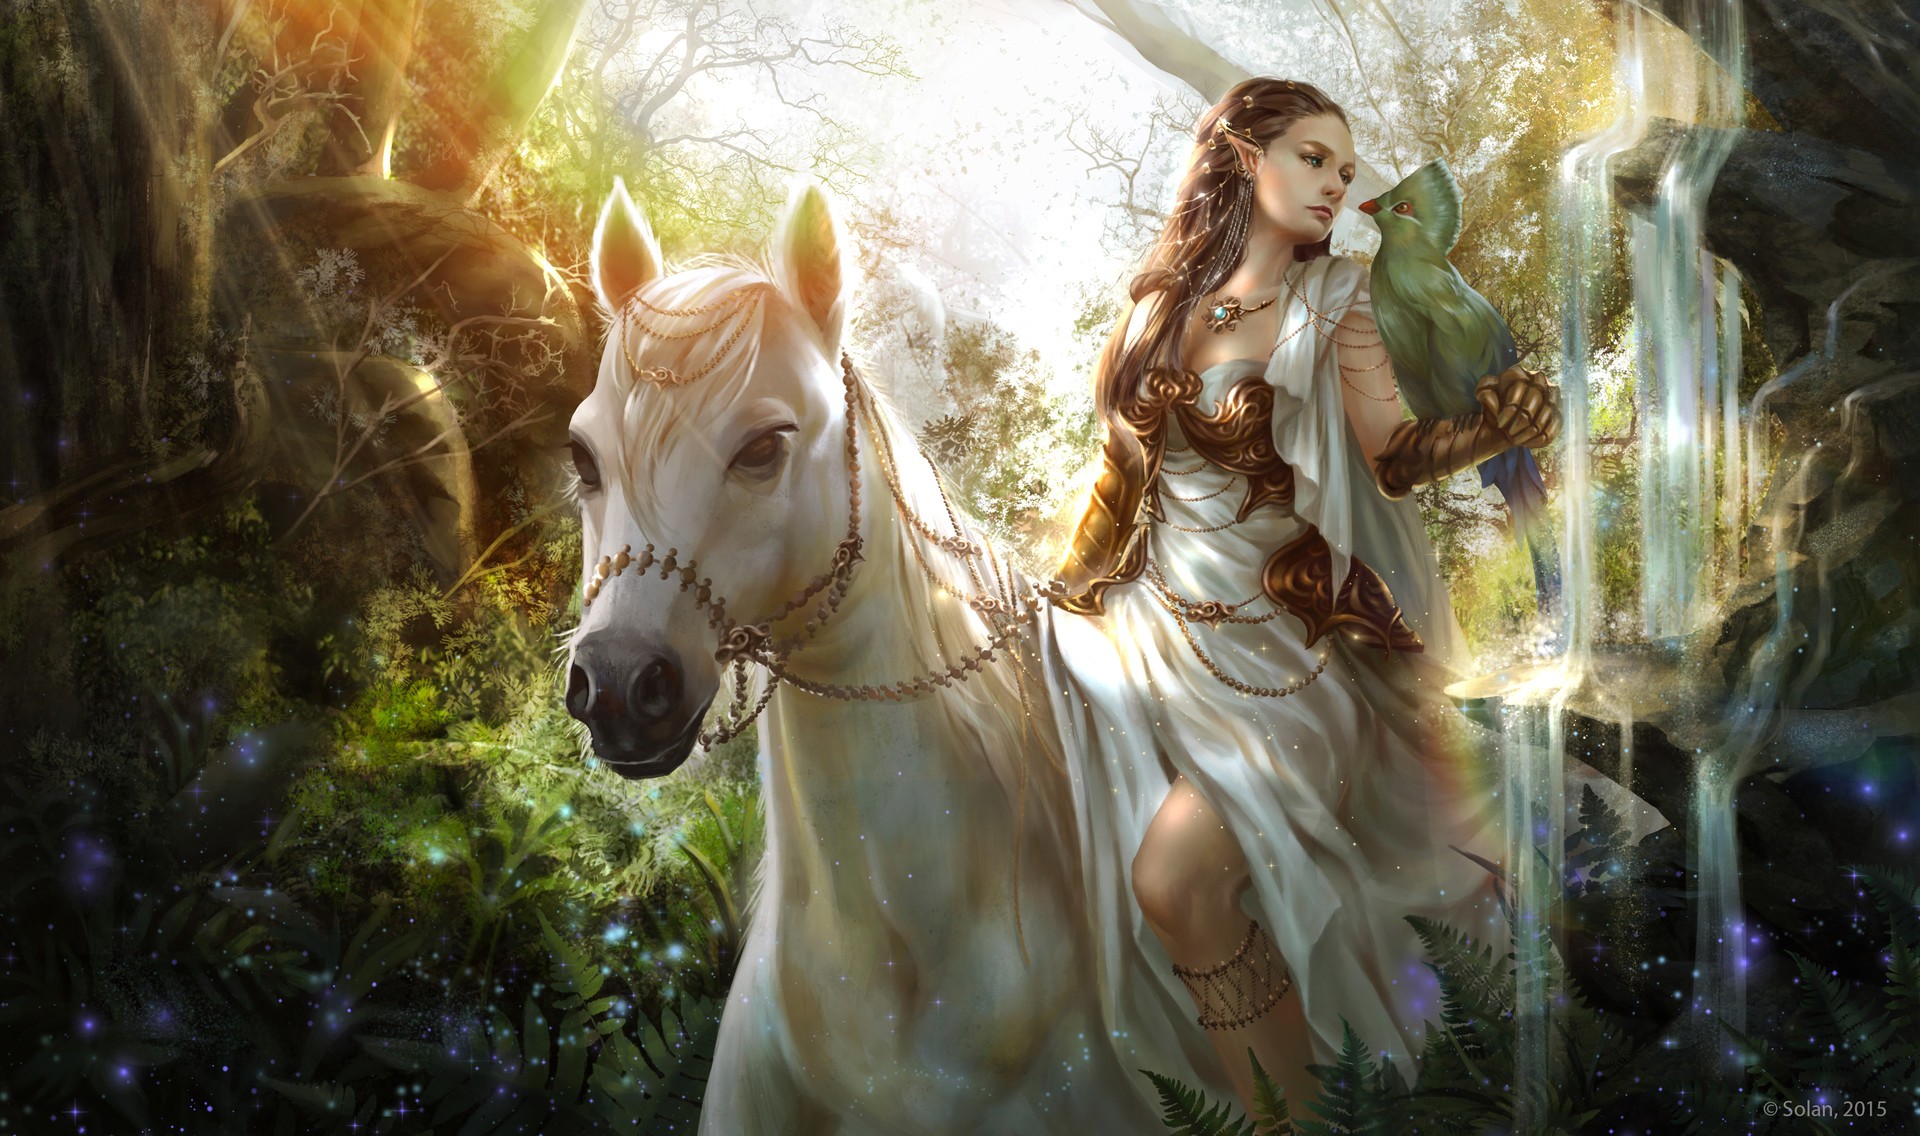 General 1920x1136 fantasy art fantasy girl 2015 (Year) horse women animals birds pointy ears sitting long hair brunette dress white dress